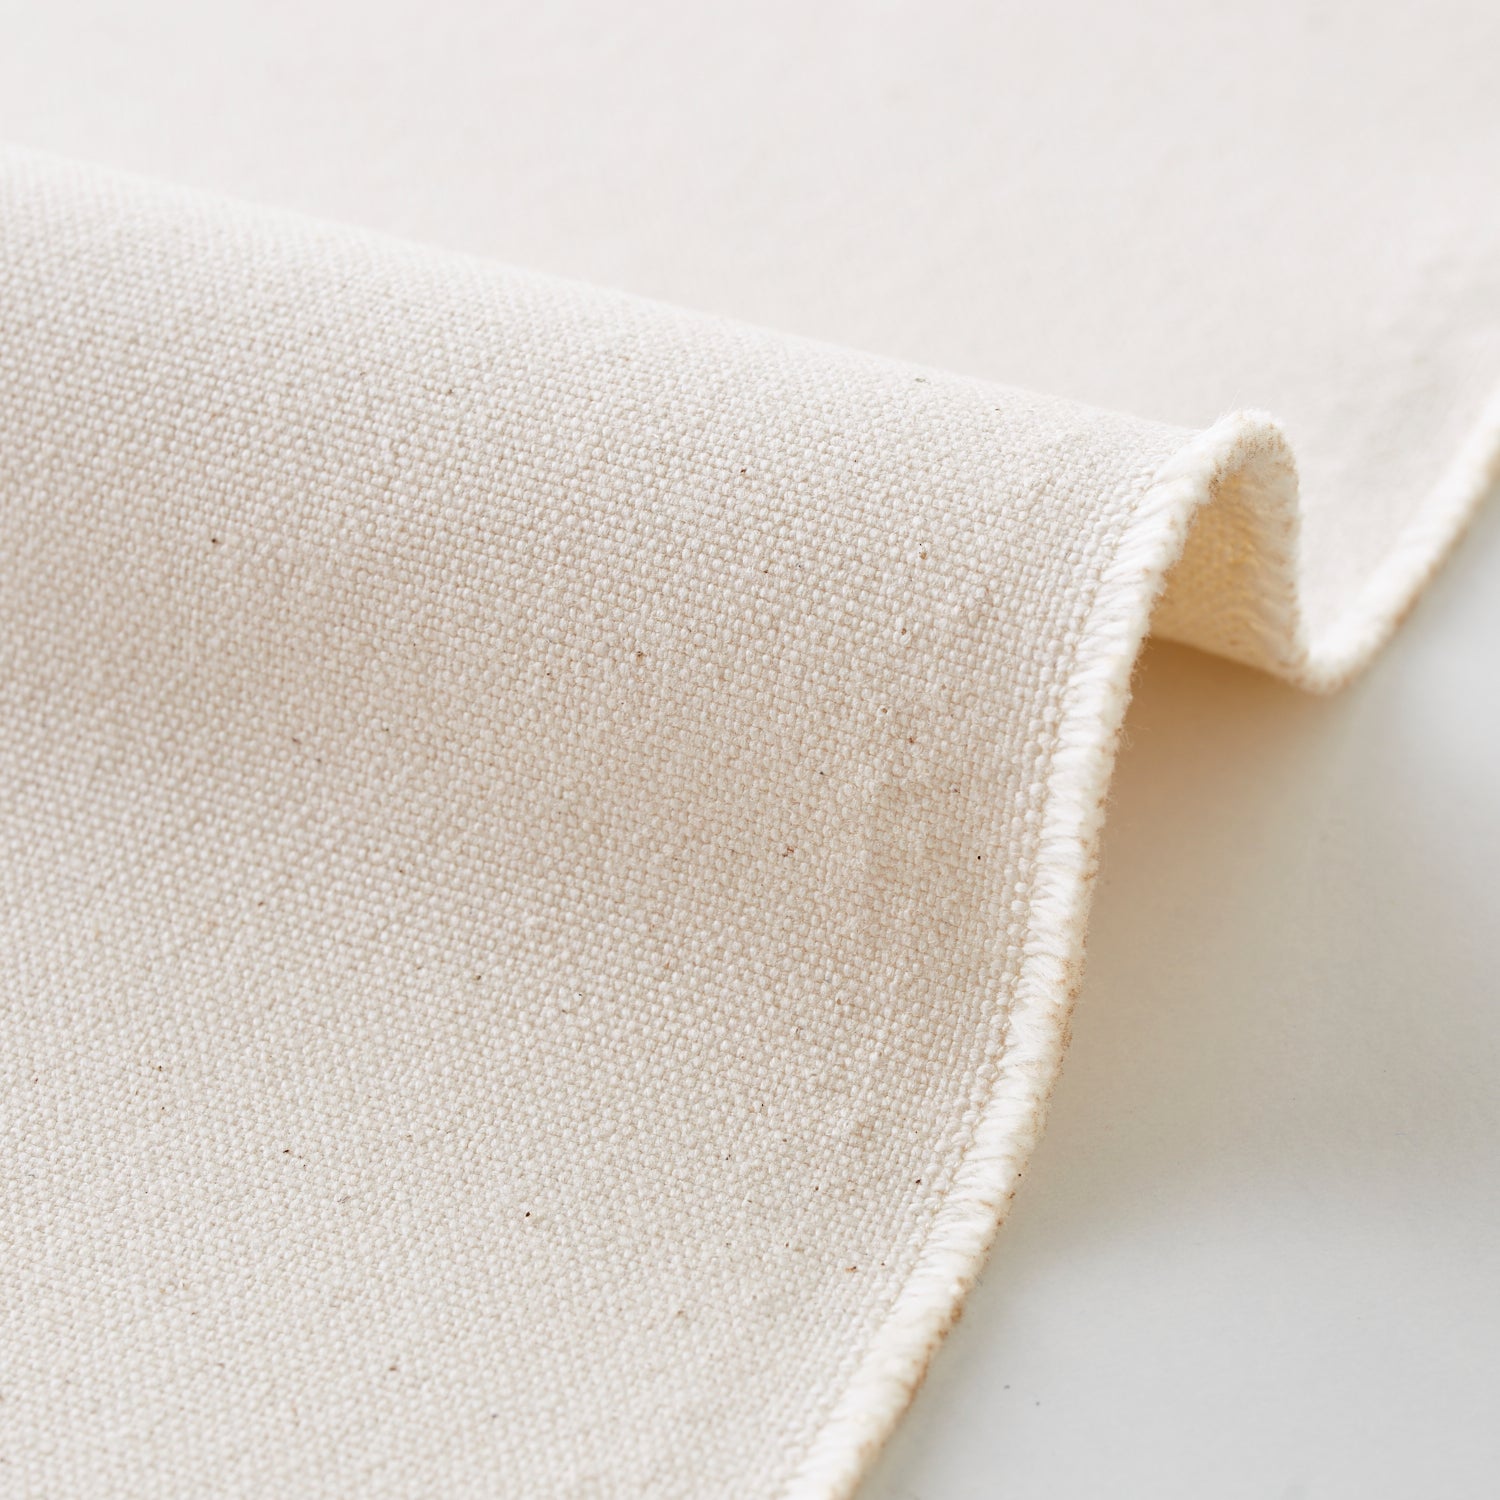 Cotton 100% 9.5 Sailcloth [Nuno to Mono]